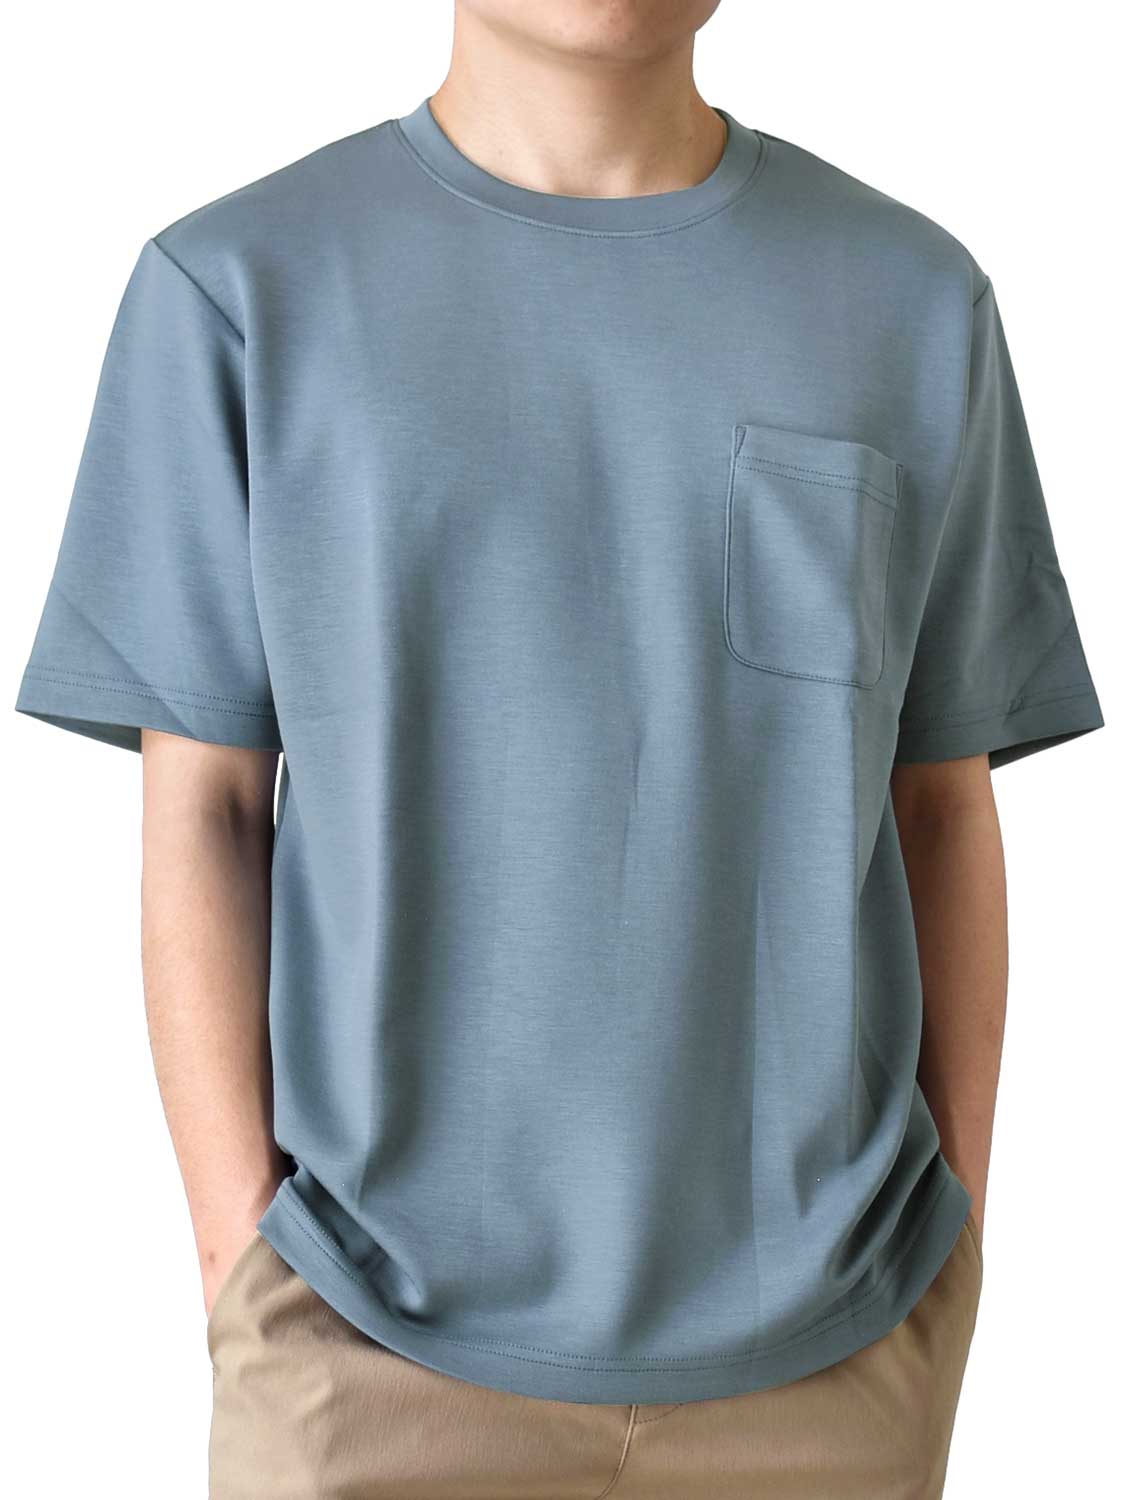 Tシャツ メンズ 半袖 接触冷感 涼しい 夏 ストレッチ クルーネック ゆったり ふわとろ くすみカラー 柔らかい ポケット付き 白 送料無料 通販Y